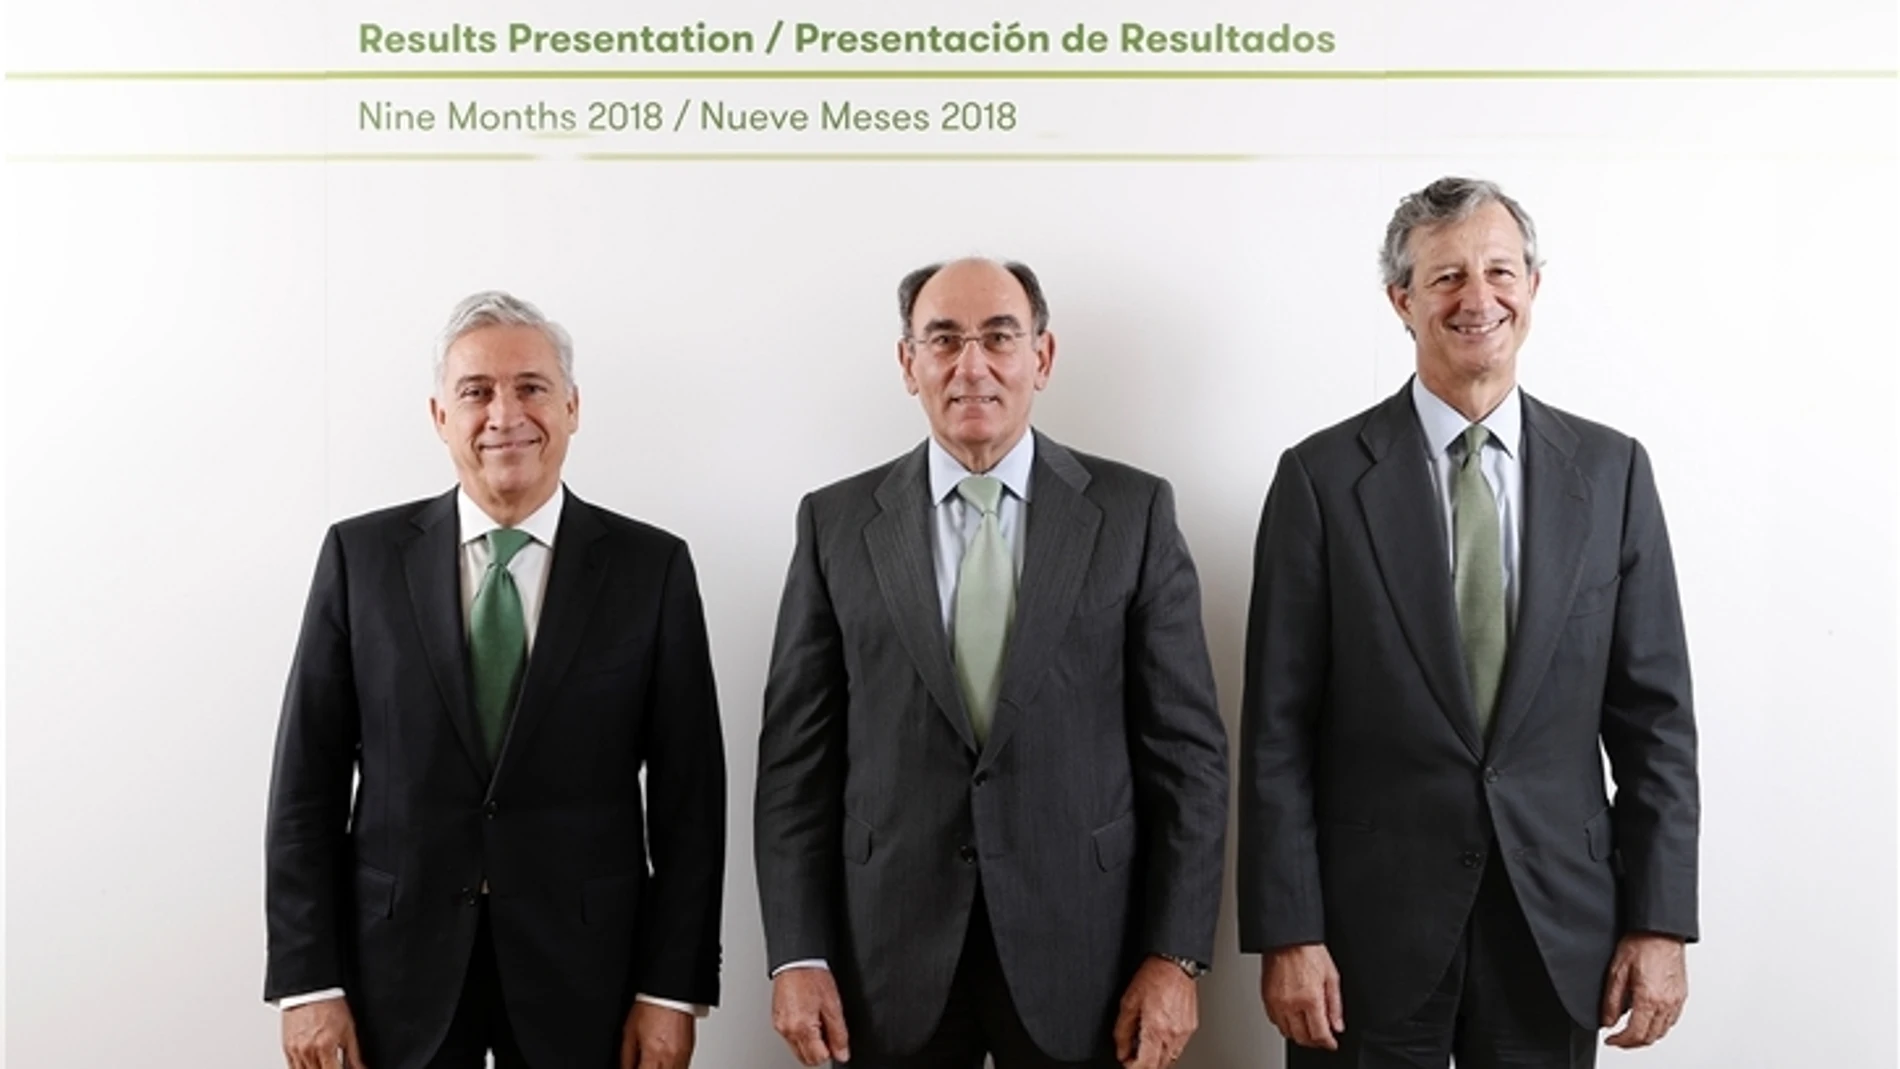 De izquierda a derecha: el director general de los Negocios del grupo Iberdrola, Francisco Martínez Córcoles, el presidente del grupo, Ignacio Galán, y el director general de Finanzas y Recursos (CFO), José Sainz Armada.